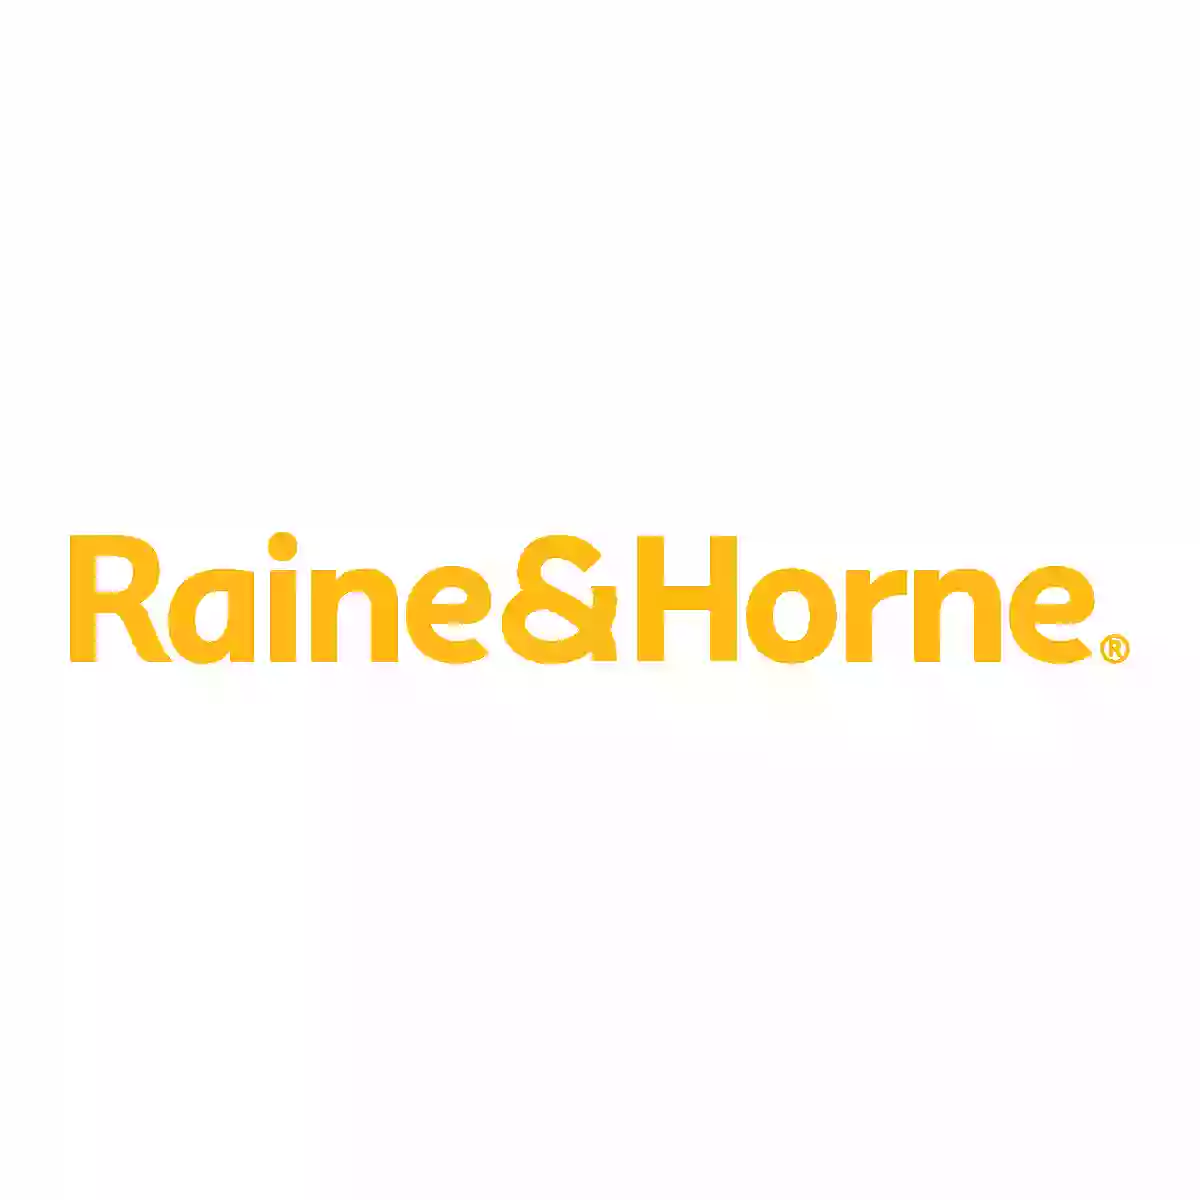 Raine & Horne Melton